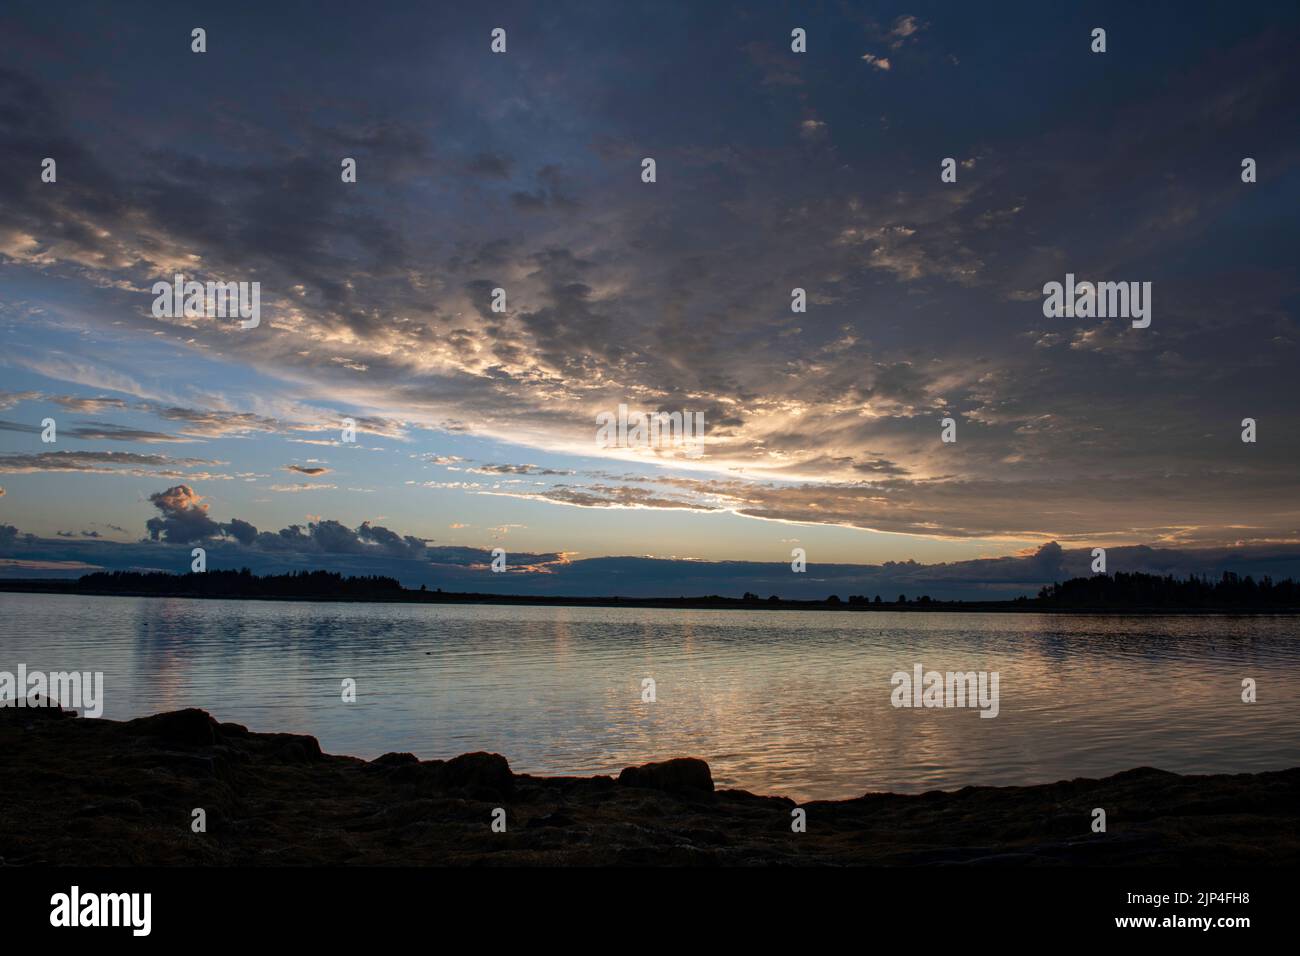 Agosto 13, 2022,7:33m. Vista de la Bahía Casco antes de la puesta de sol desde la Isla Barnes. Whaleboat Island en el centro. Foto de stock